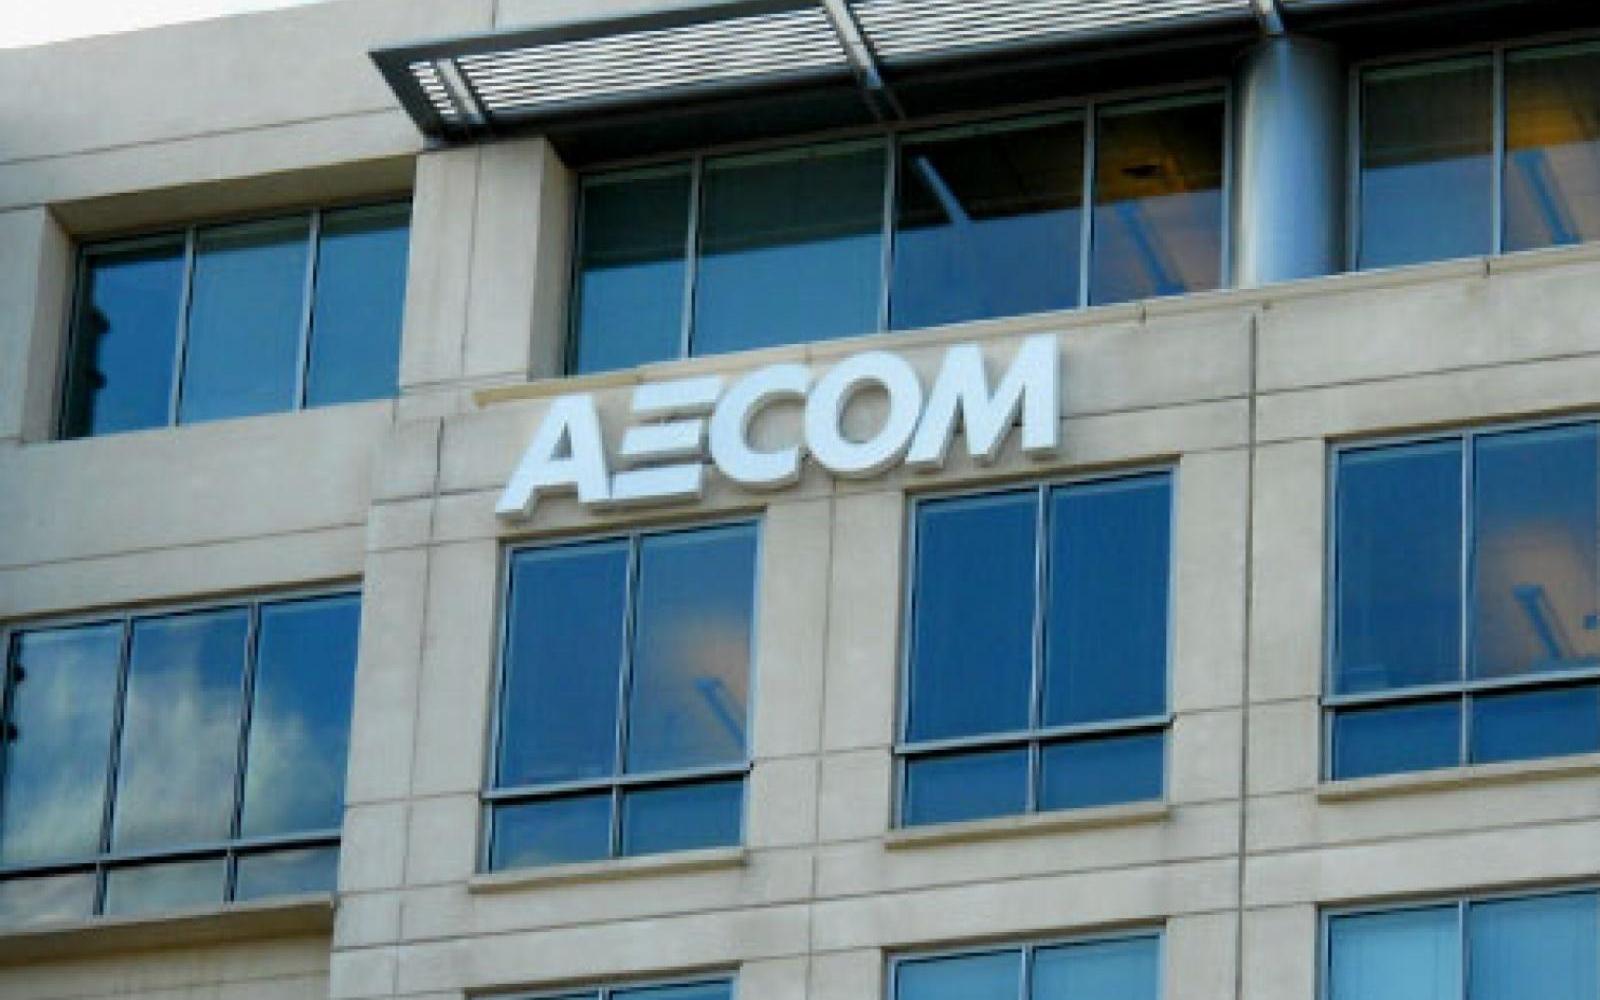 AECOM signage, exterior